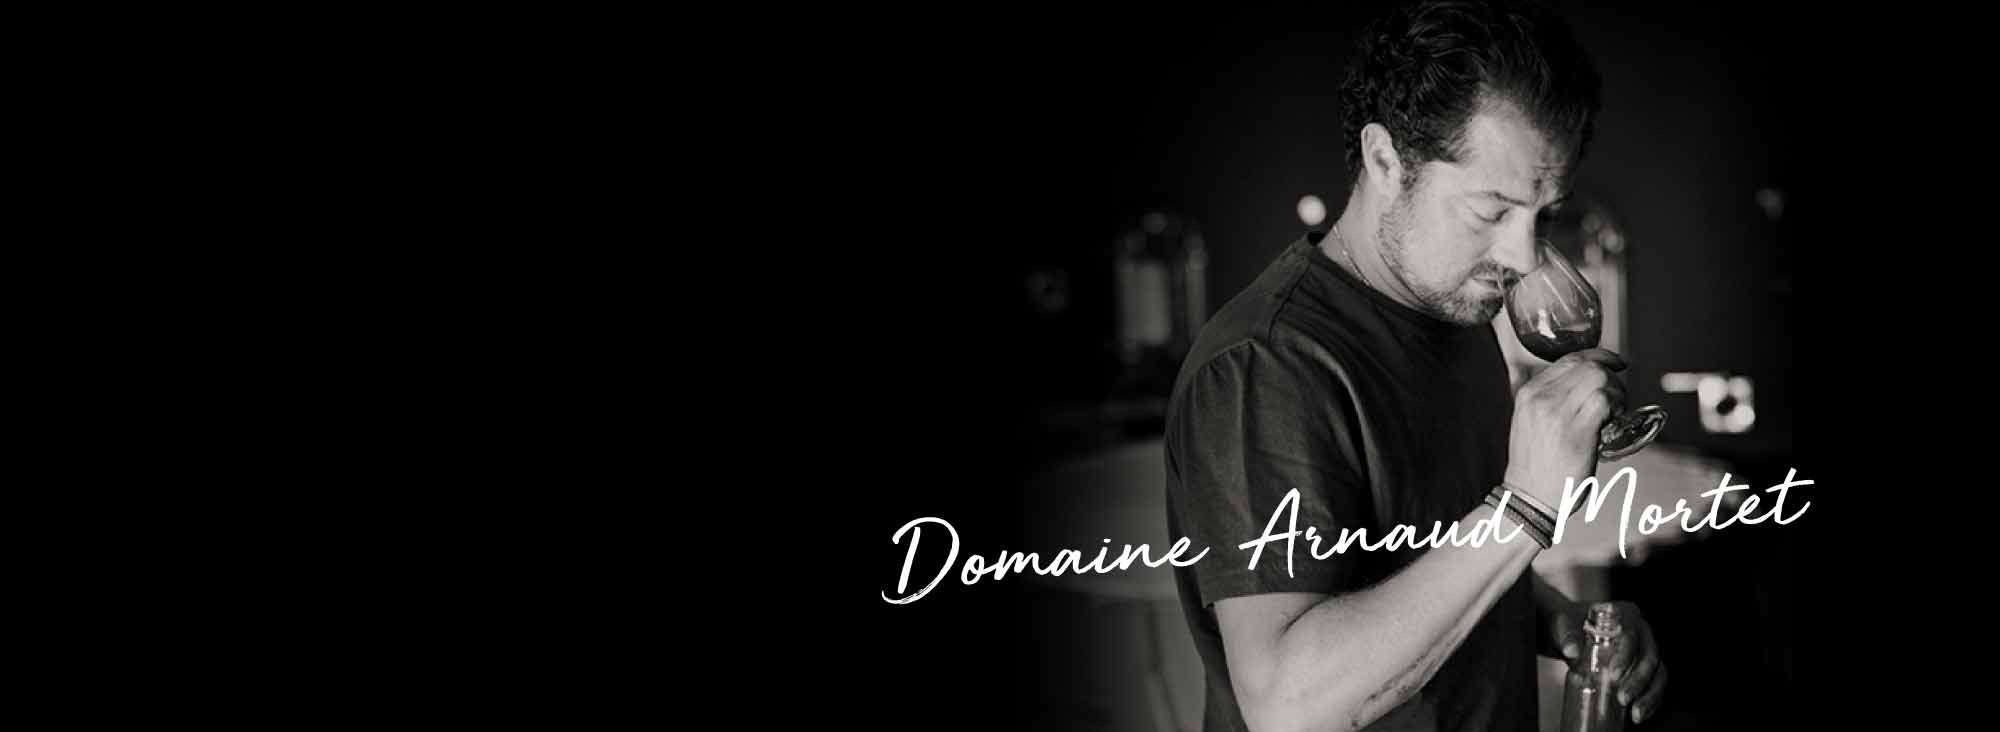 阿諾莫泰酒莊 Domaine Arnaud Mortet